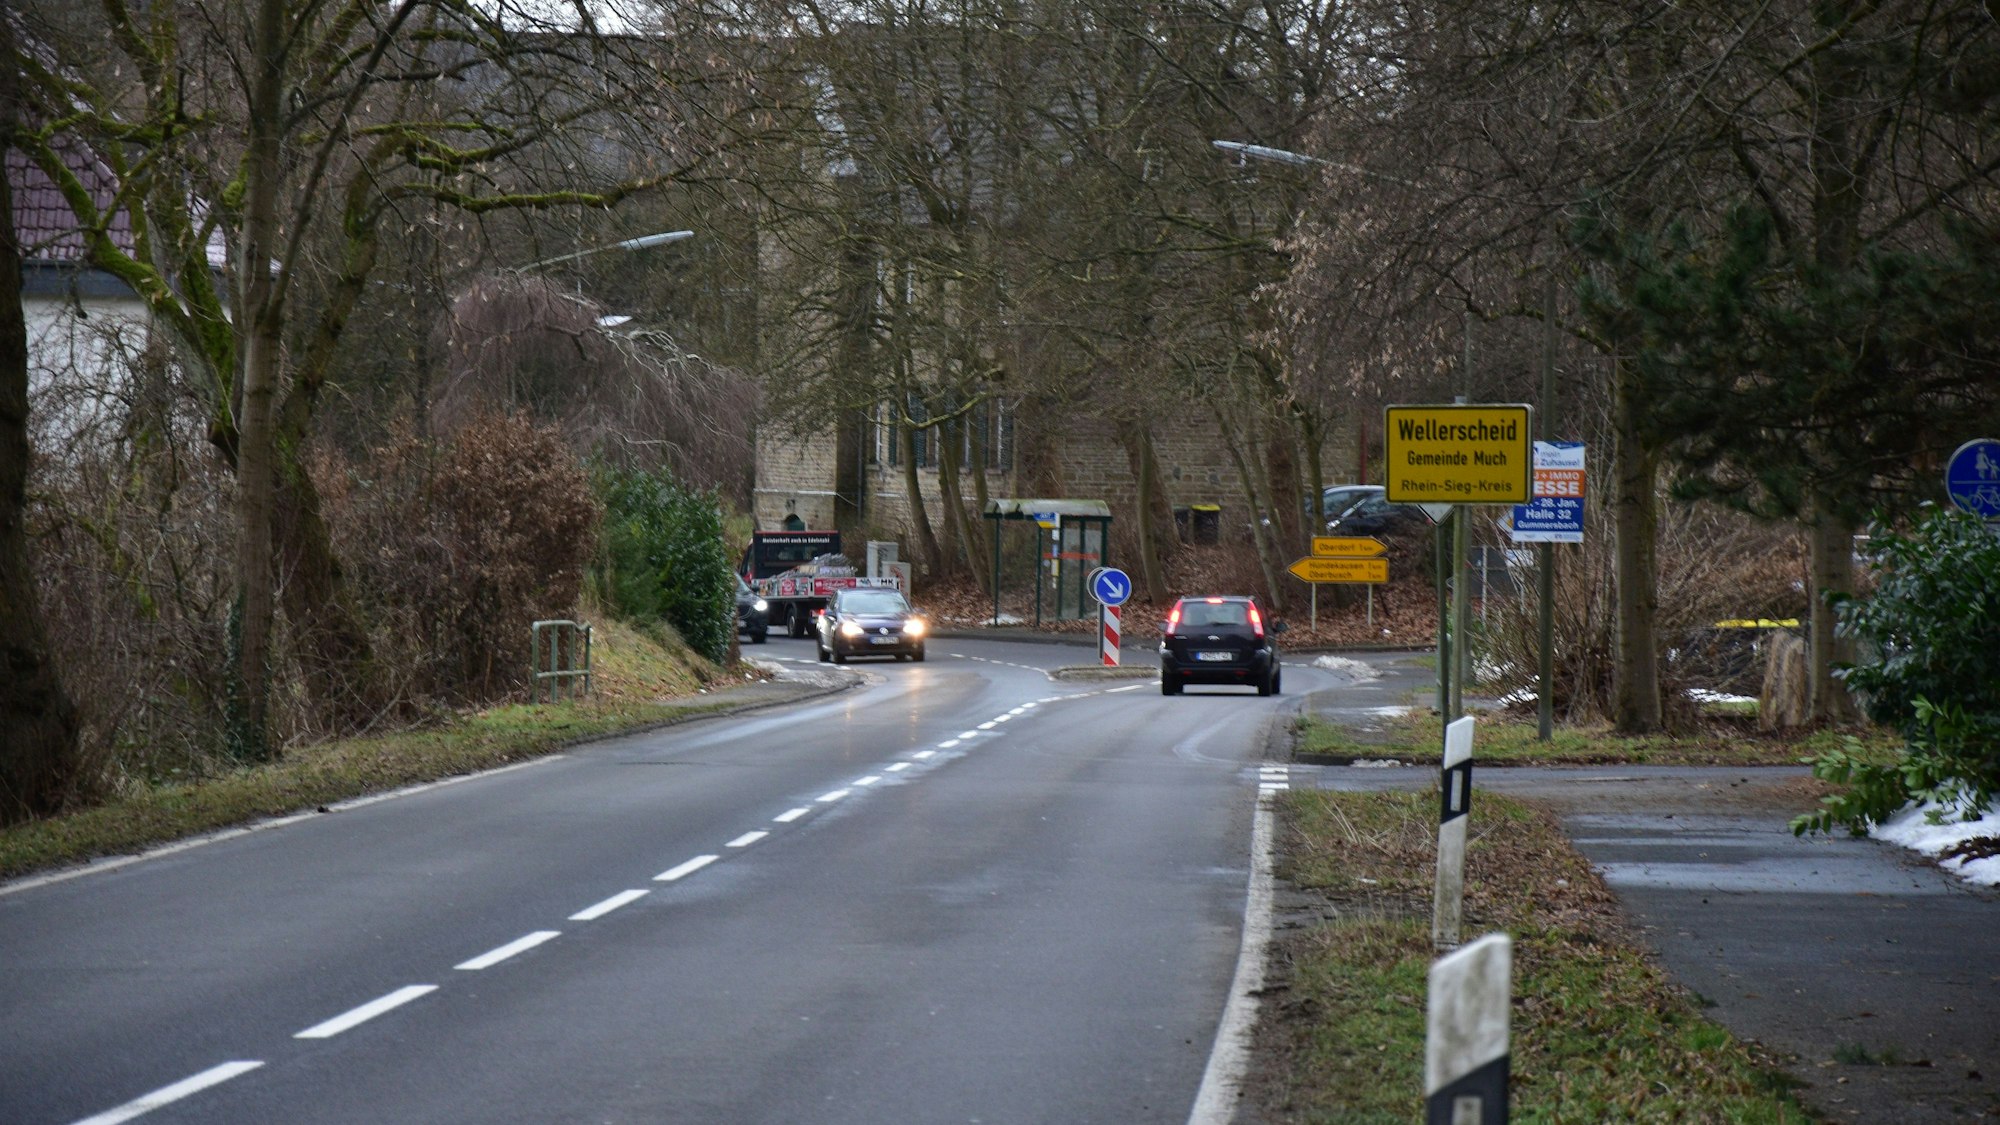 Gefährliche Ortsdurchfahrt in Much-Wellerscheid: Eine lange Gerade vor dem Ortseingang sorgt für überhöhte Geschwindigkeiten an der Kreuzung im Ortskern.